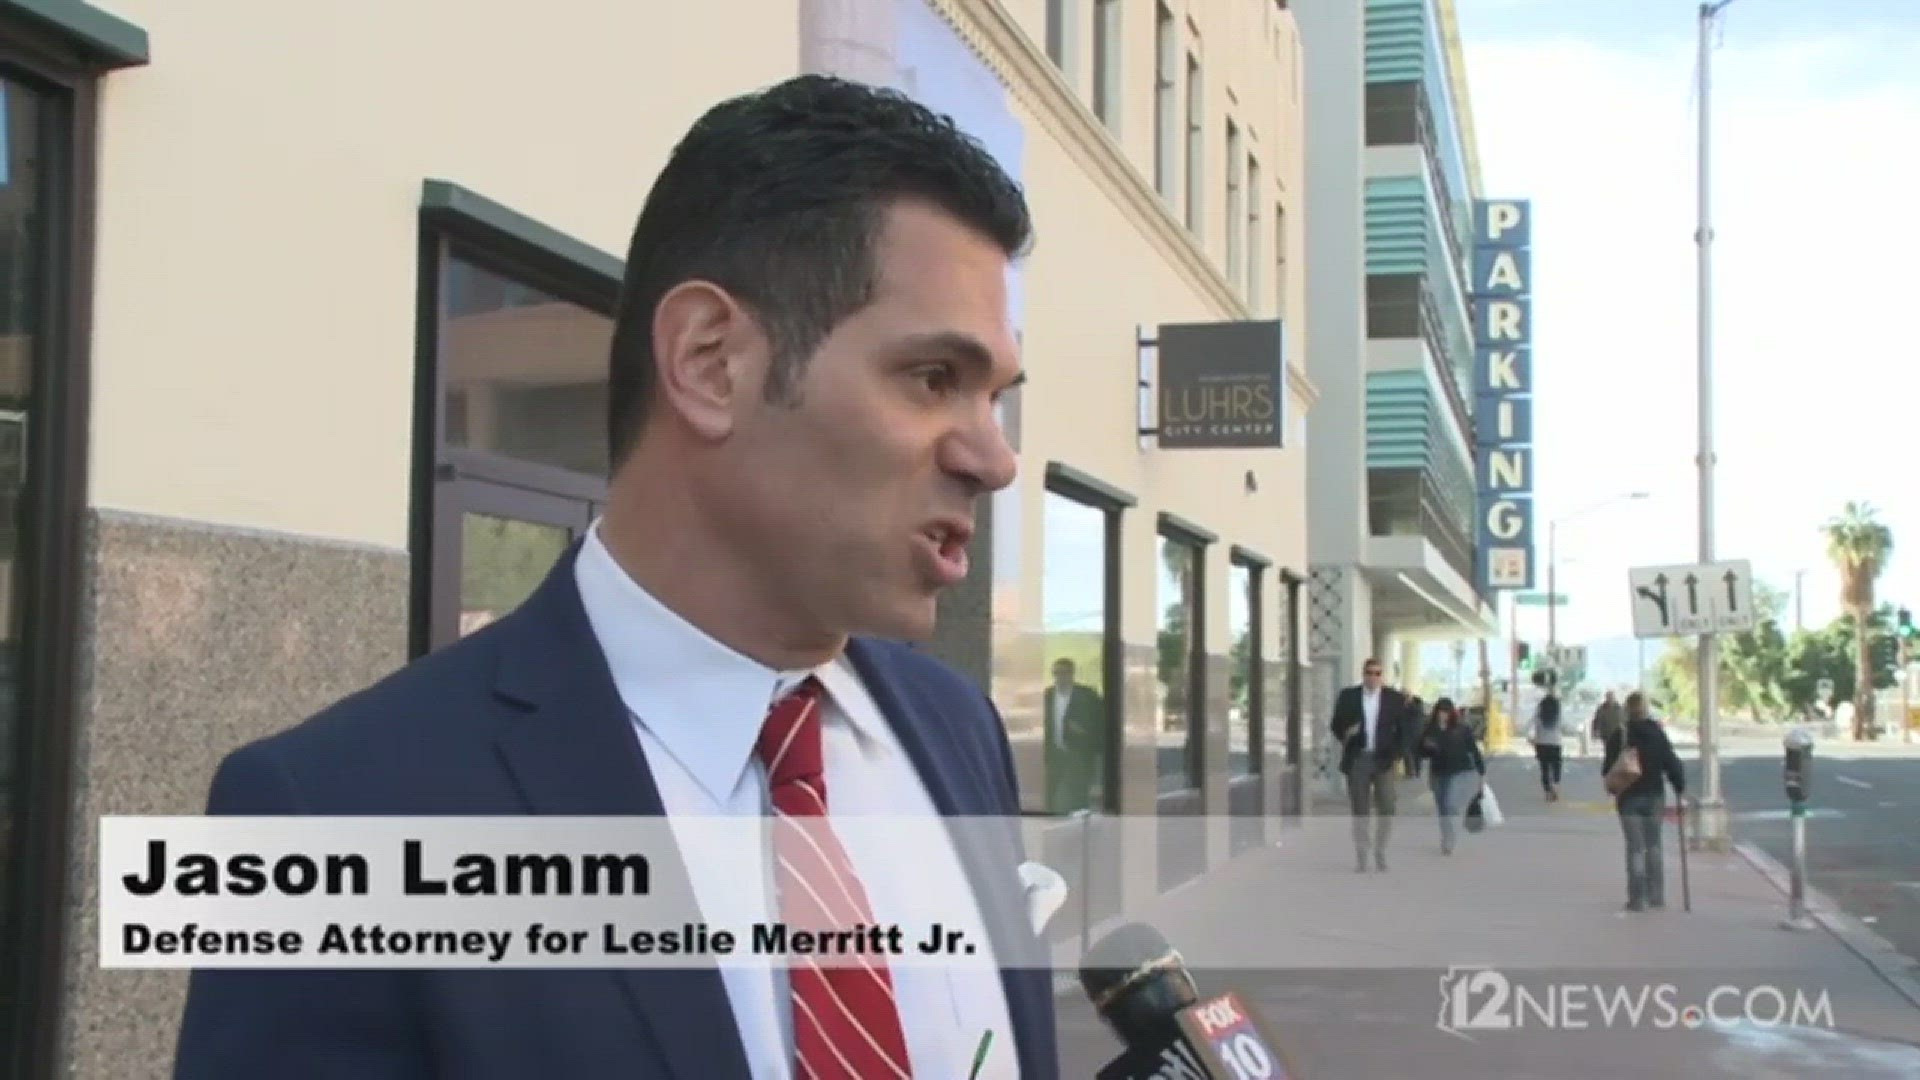 Jason Lamm spoke following allegations dismissed and the release of Leslie Merritt's gun.